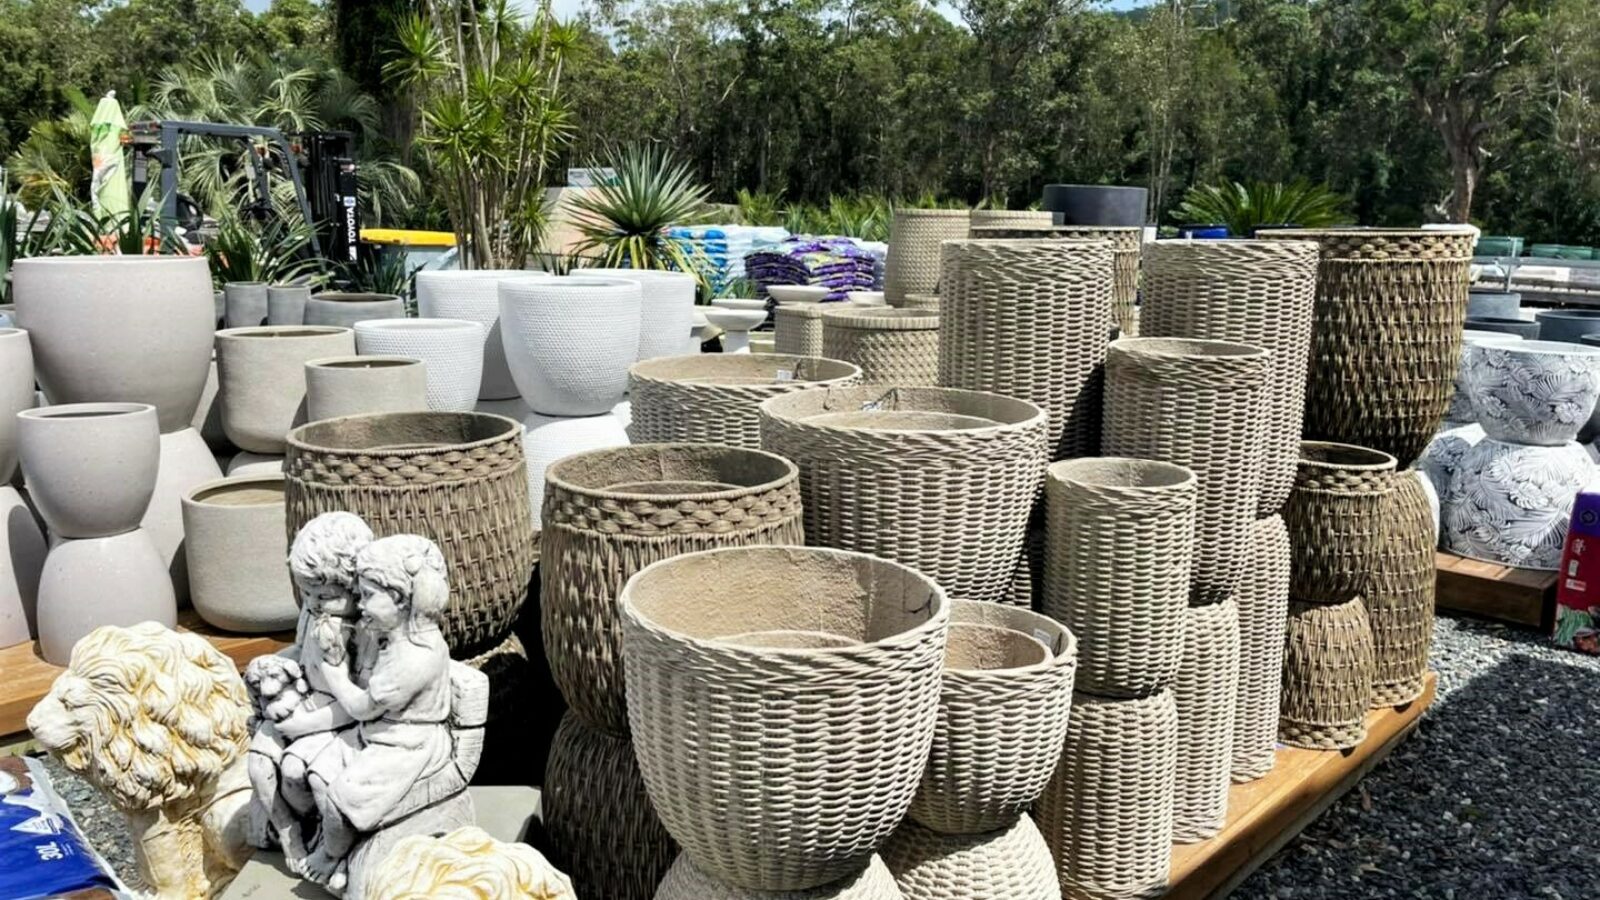 Palms Landscape Supplies fancy pots